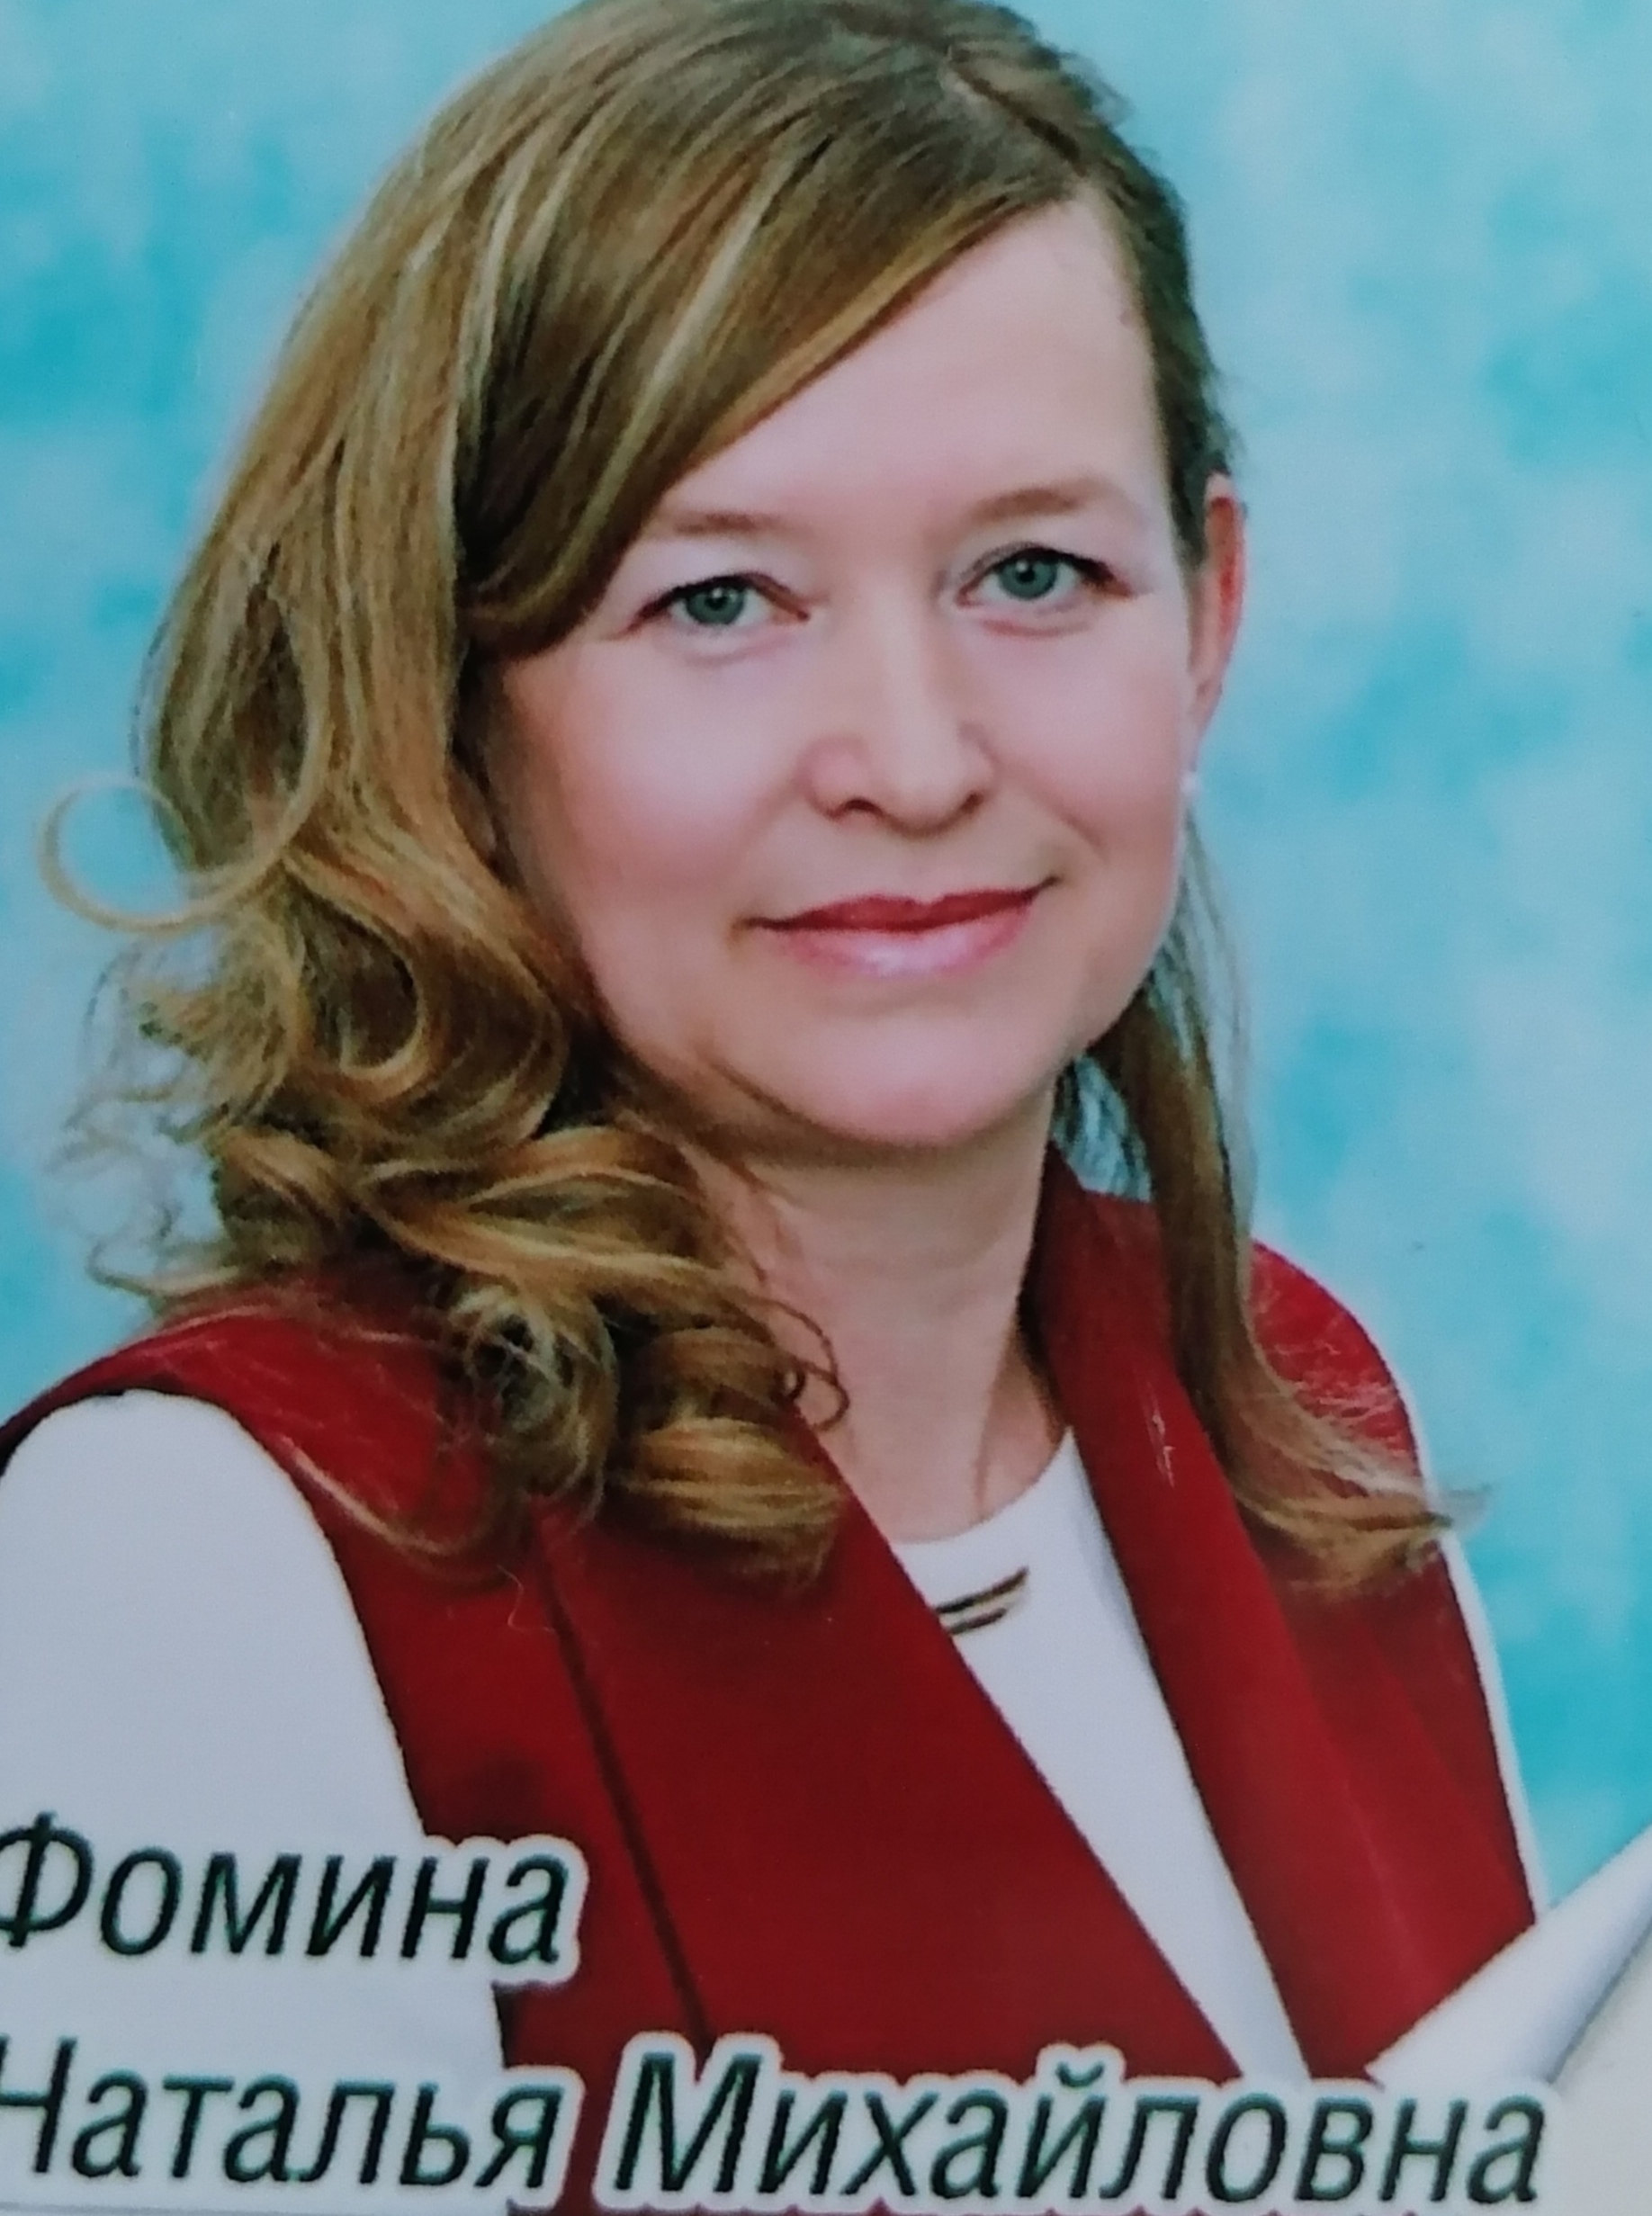 Фомина Наталья Михайловна.